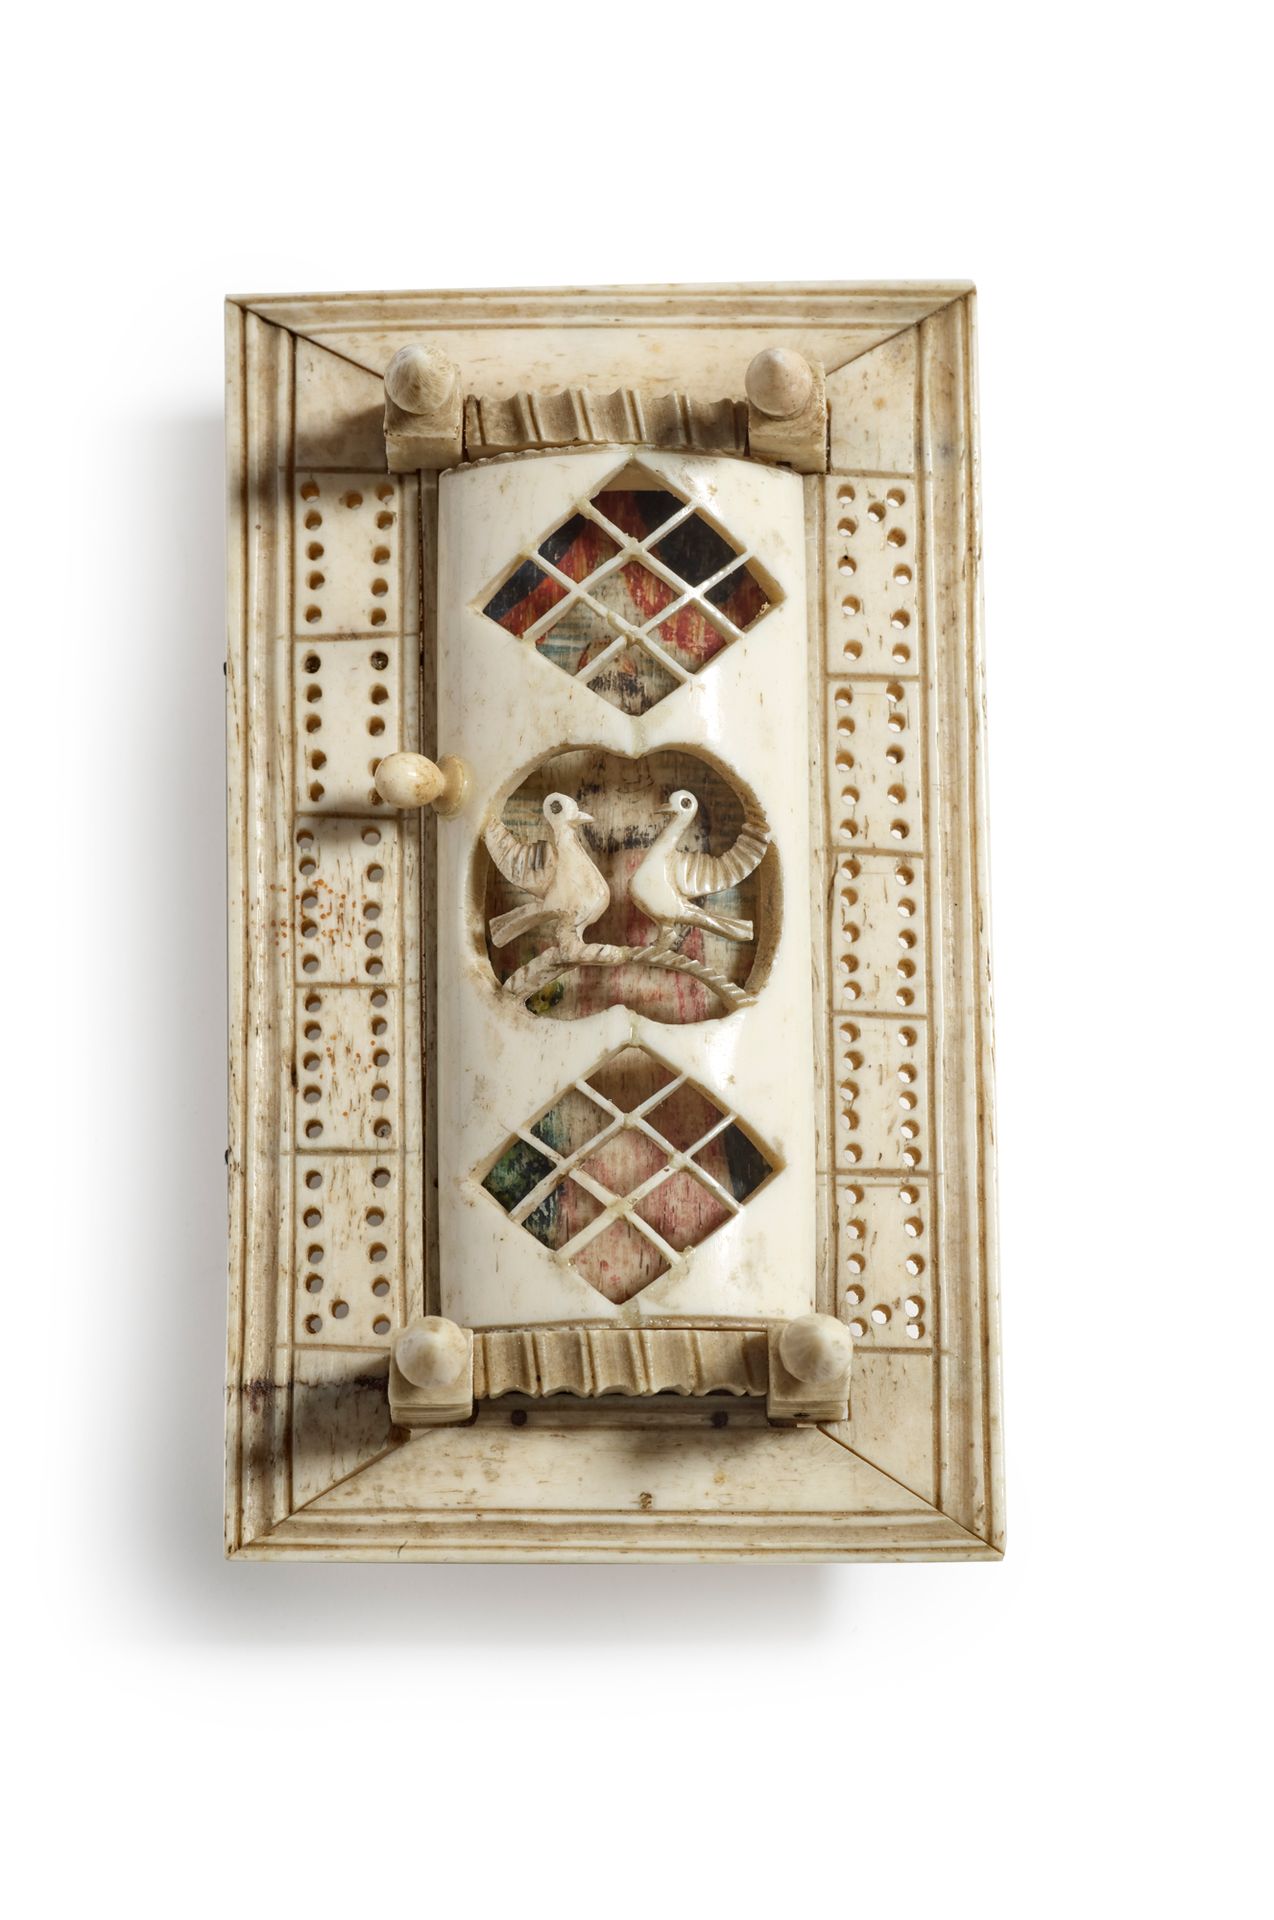 Null 骨质多米诺骨牌游戏，装在一个带铰链盖的盒子里，抽屉里有一个画有优质女士的装饰
蓬莱阁作品，19世纪初 长12厘米